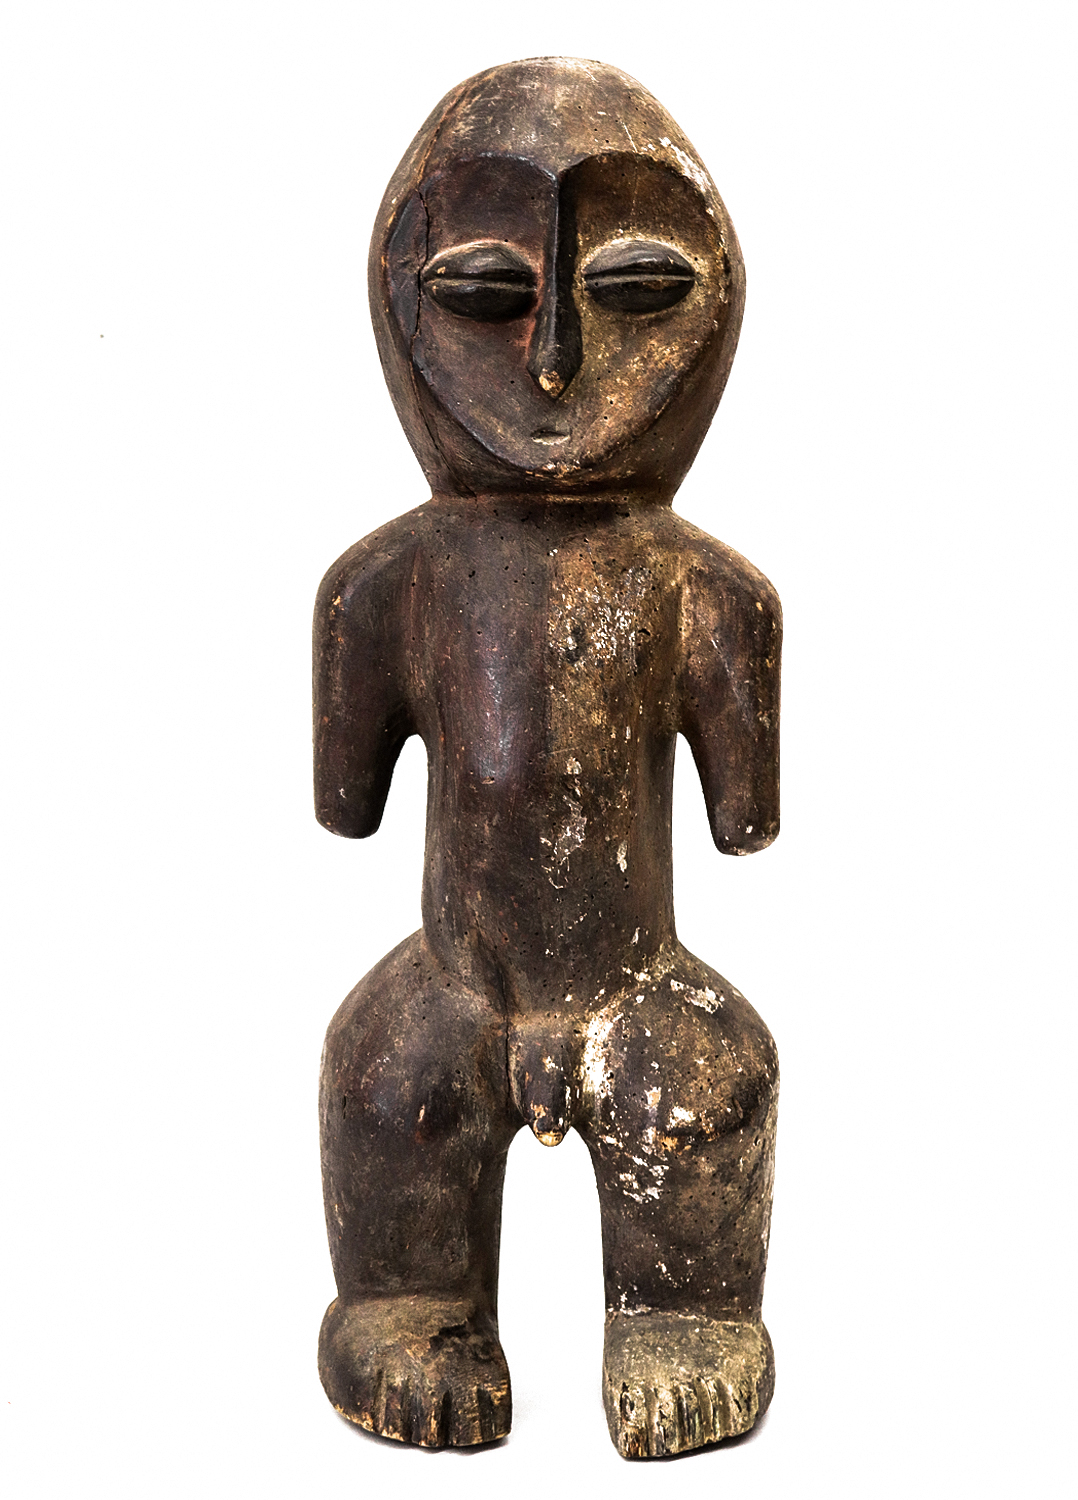 Figura Ritual, Lega, R.D. Congo, século XX, madeira, pigmentos